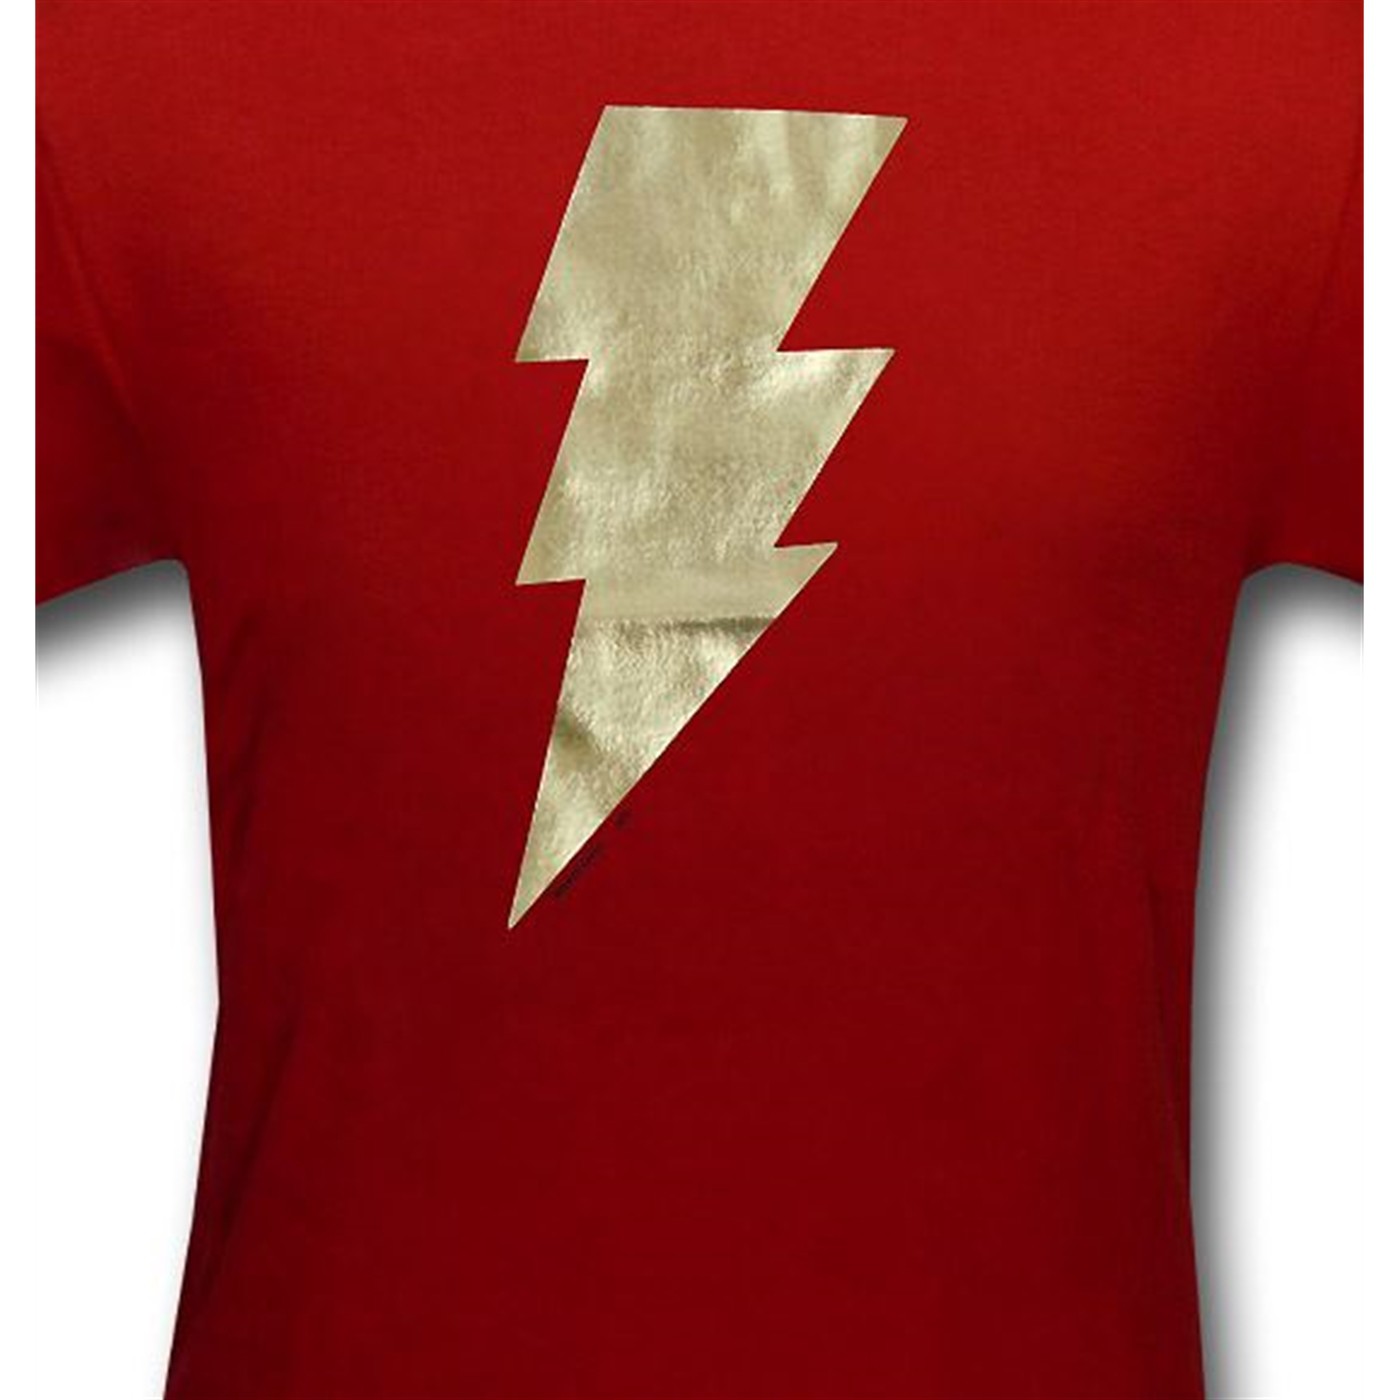 Shazam Metalix Symbol Youth T-Shirt